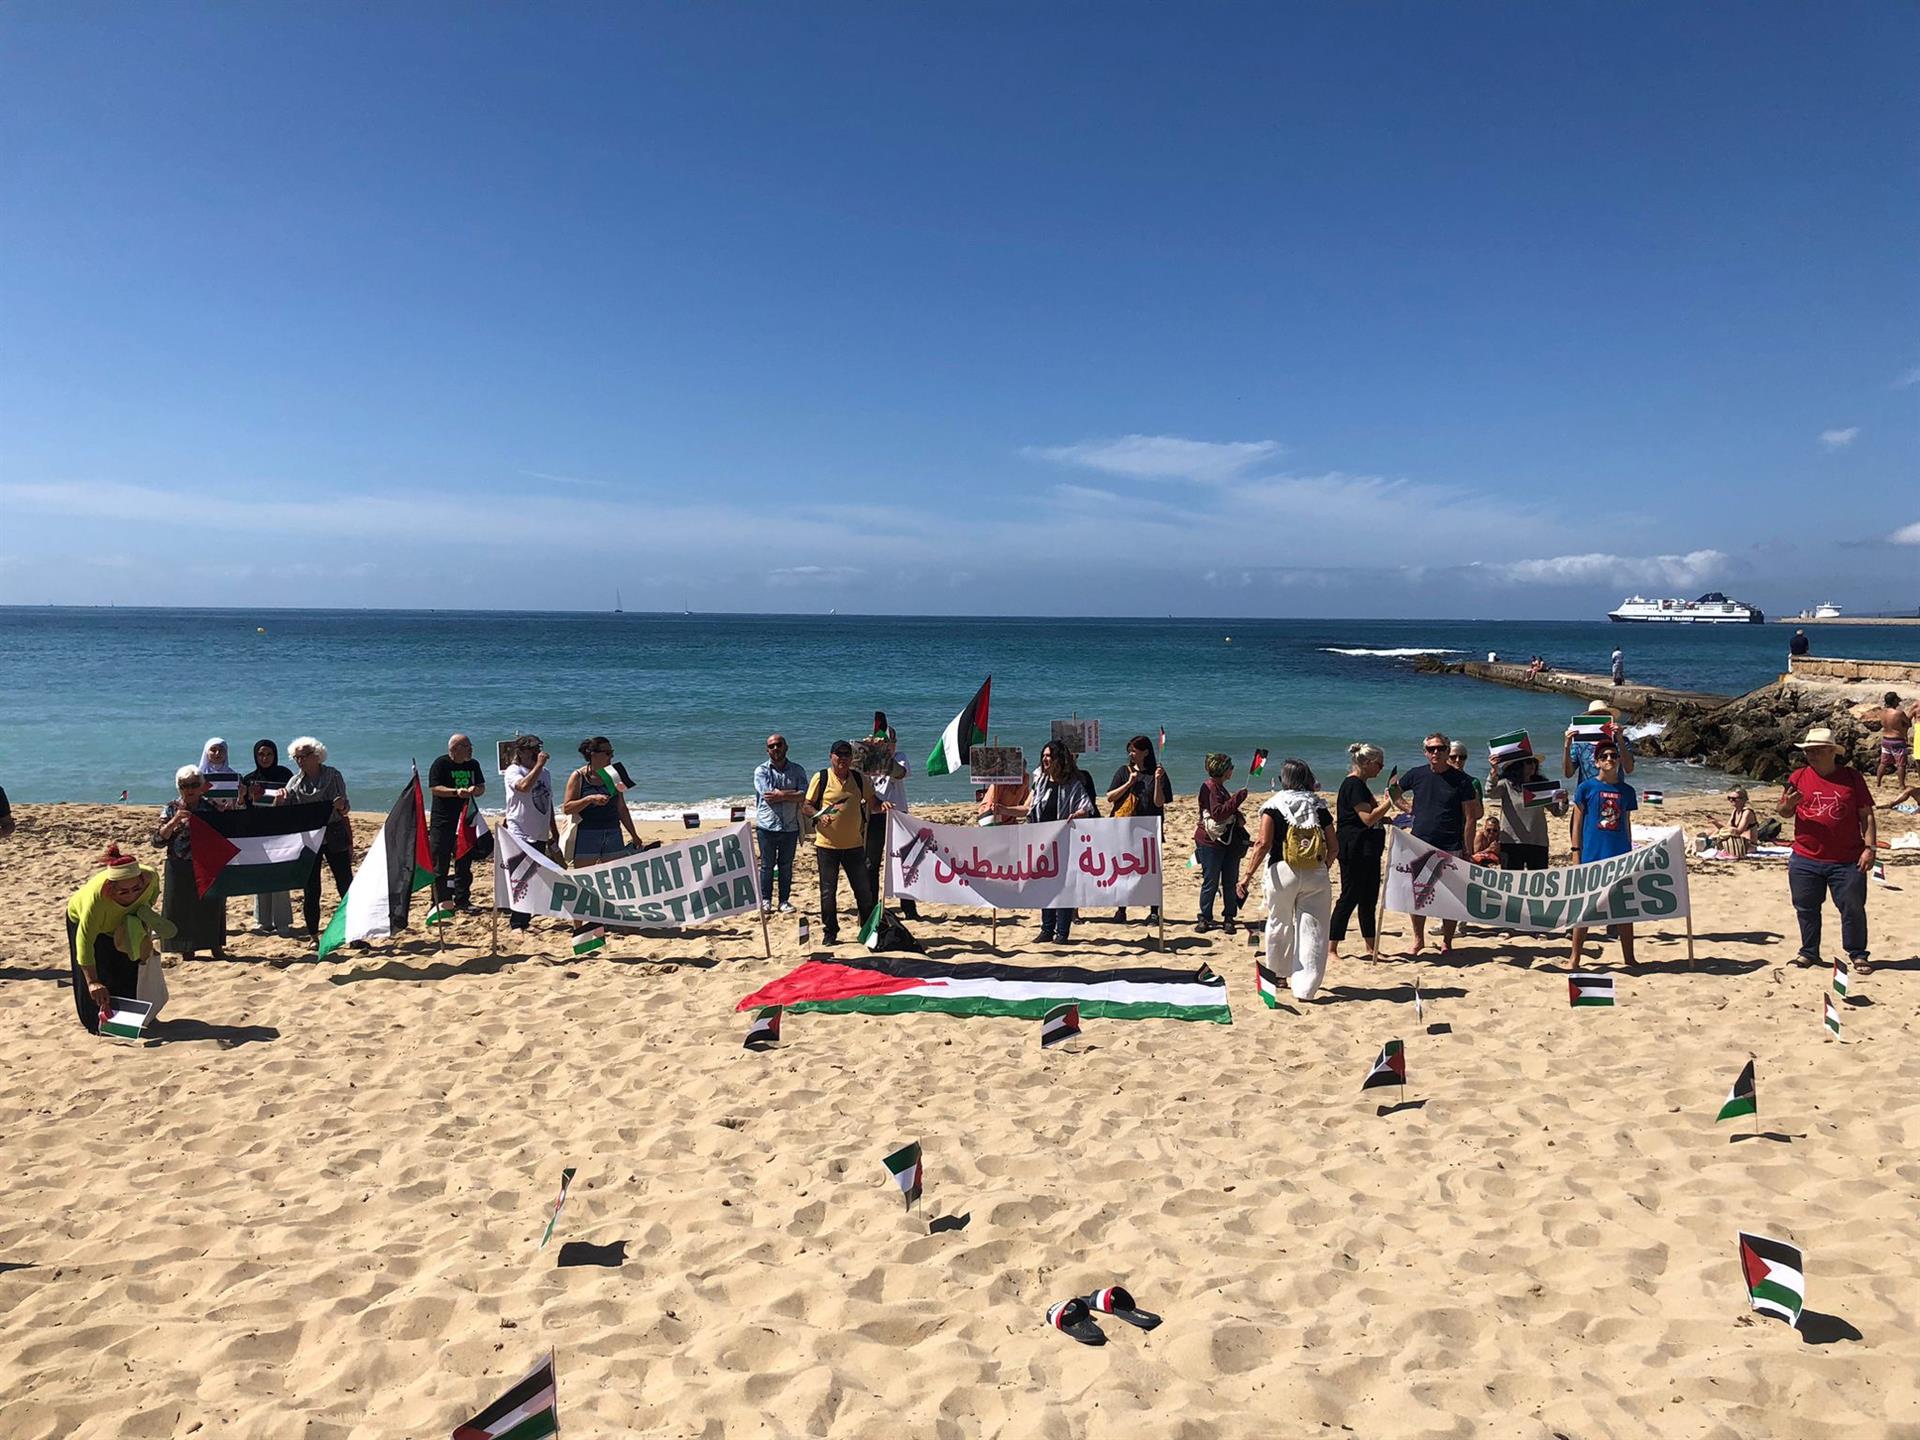 Acto de 'plantada' de banderas palestinas en una playa en Palma para reivindicar sanciones a Israel e investigar crímenes de guerra en Gaza - MALLORCA PER PALESTINA